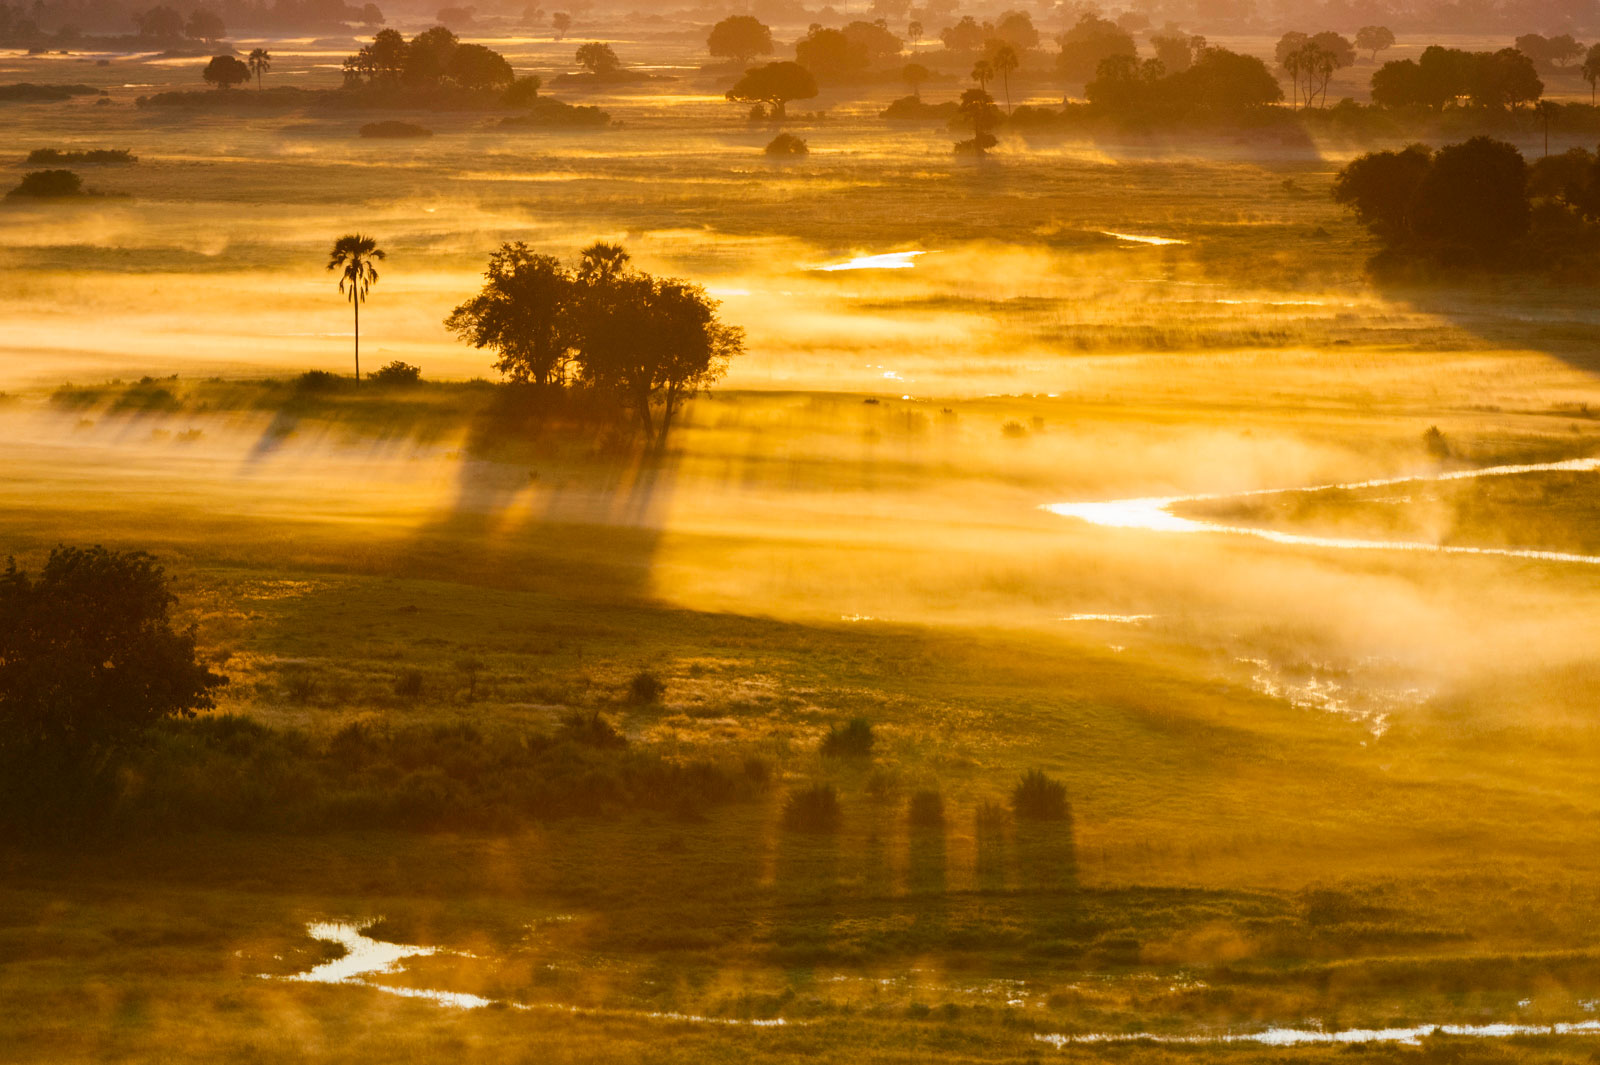 Mist at sunrise, Okavango Delta, Botswana